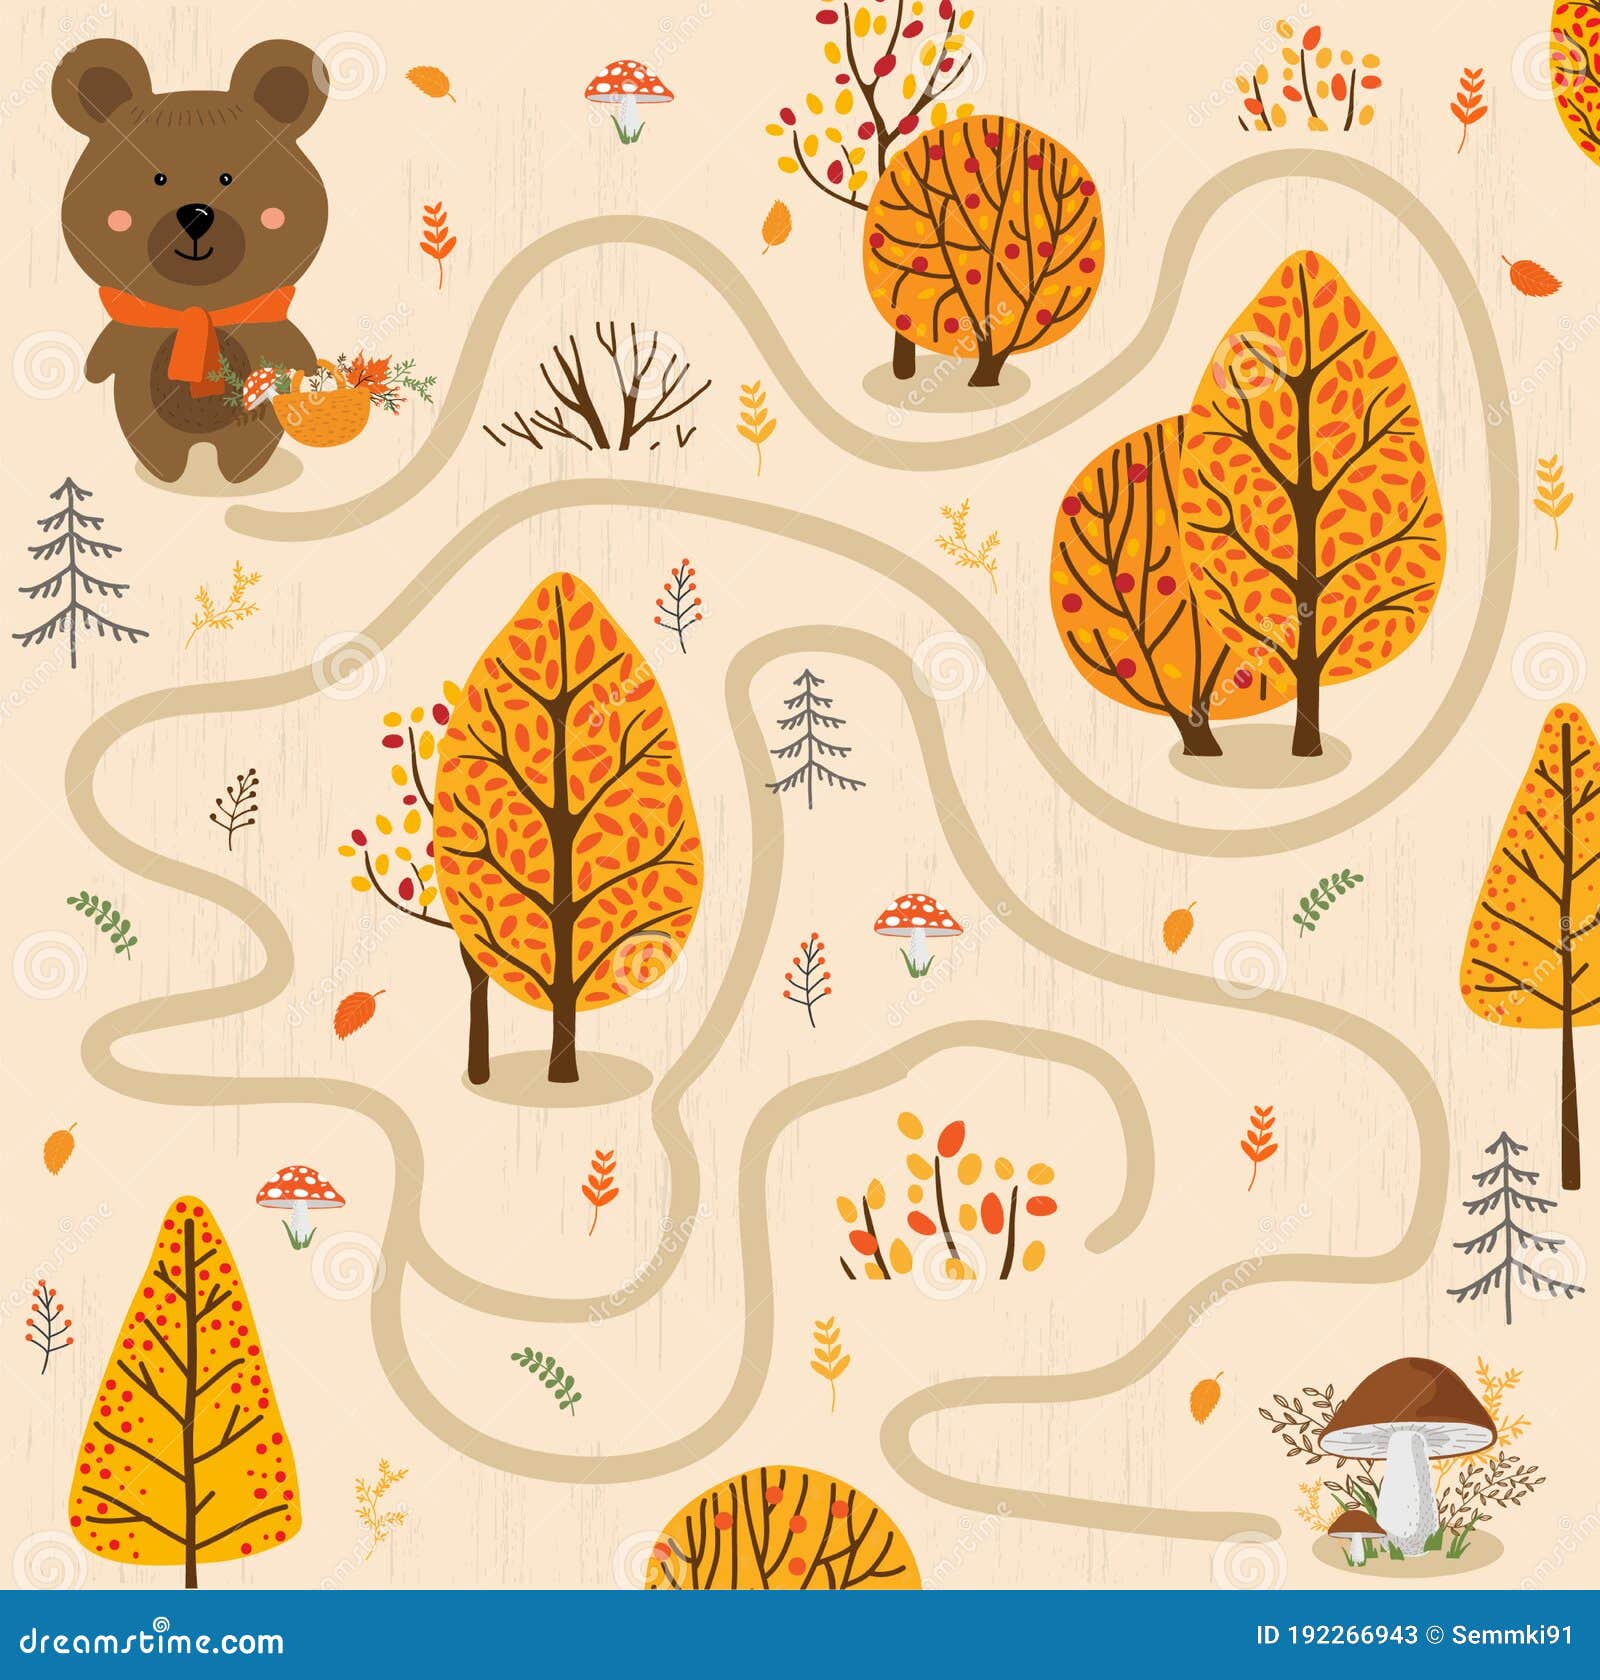 Urso Pequeno Na Floresta Do Outono. Jogo Educativo Para Crianças